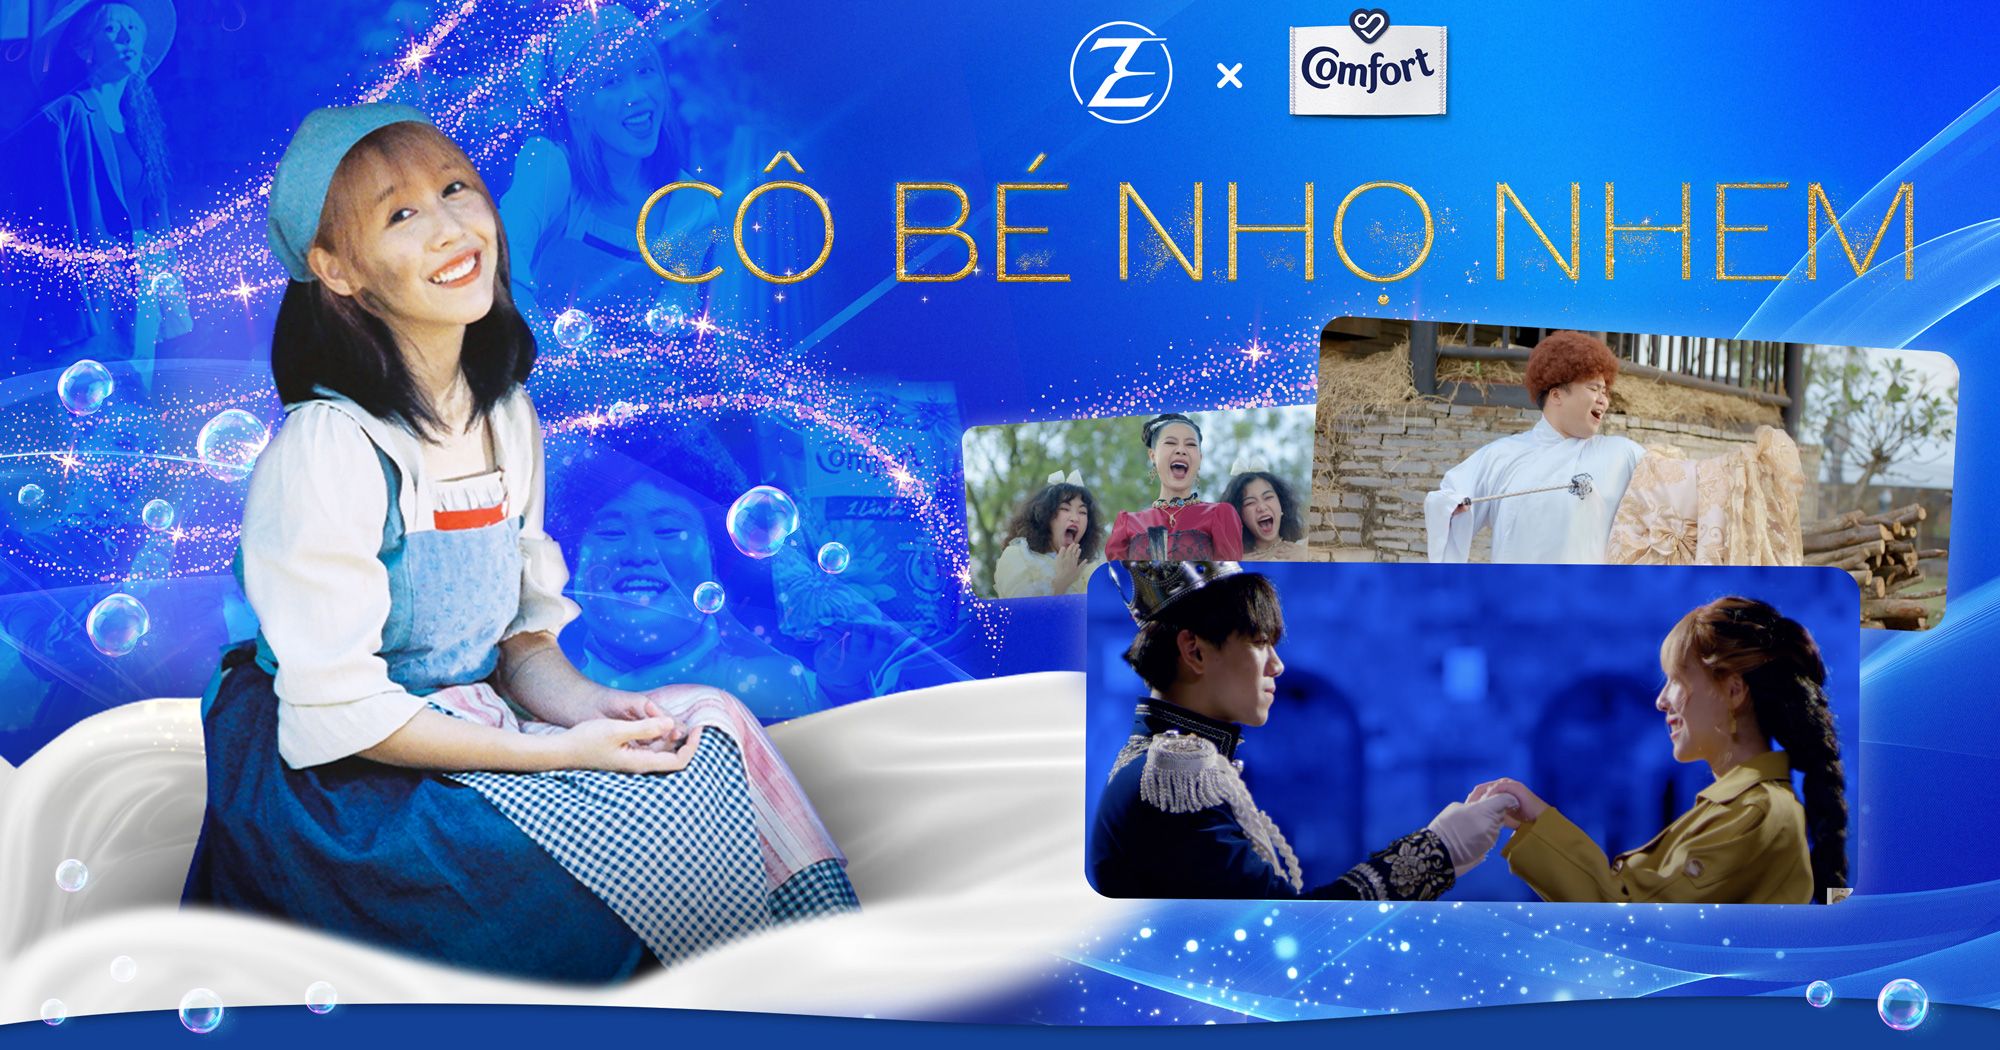 Comfort và ZEE Agency tạo Buzz Marketing trong MV “Cô bé Nhọ Nhem” của Hậu Hoàng 